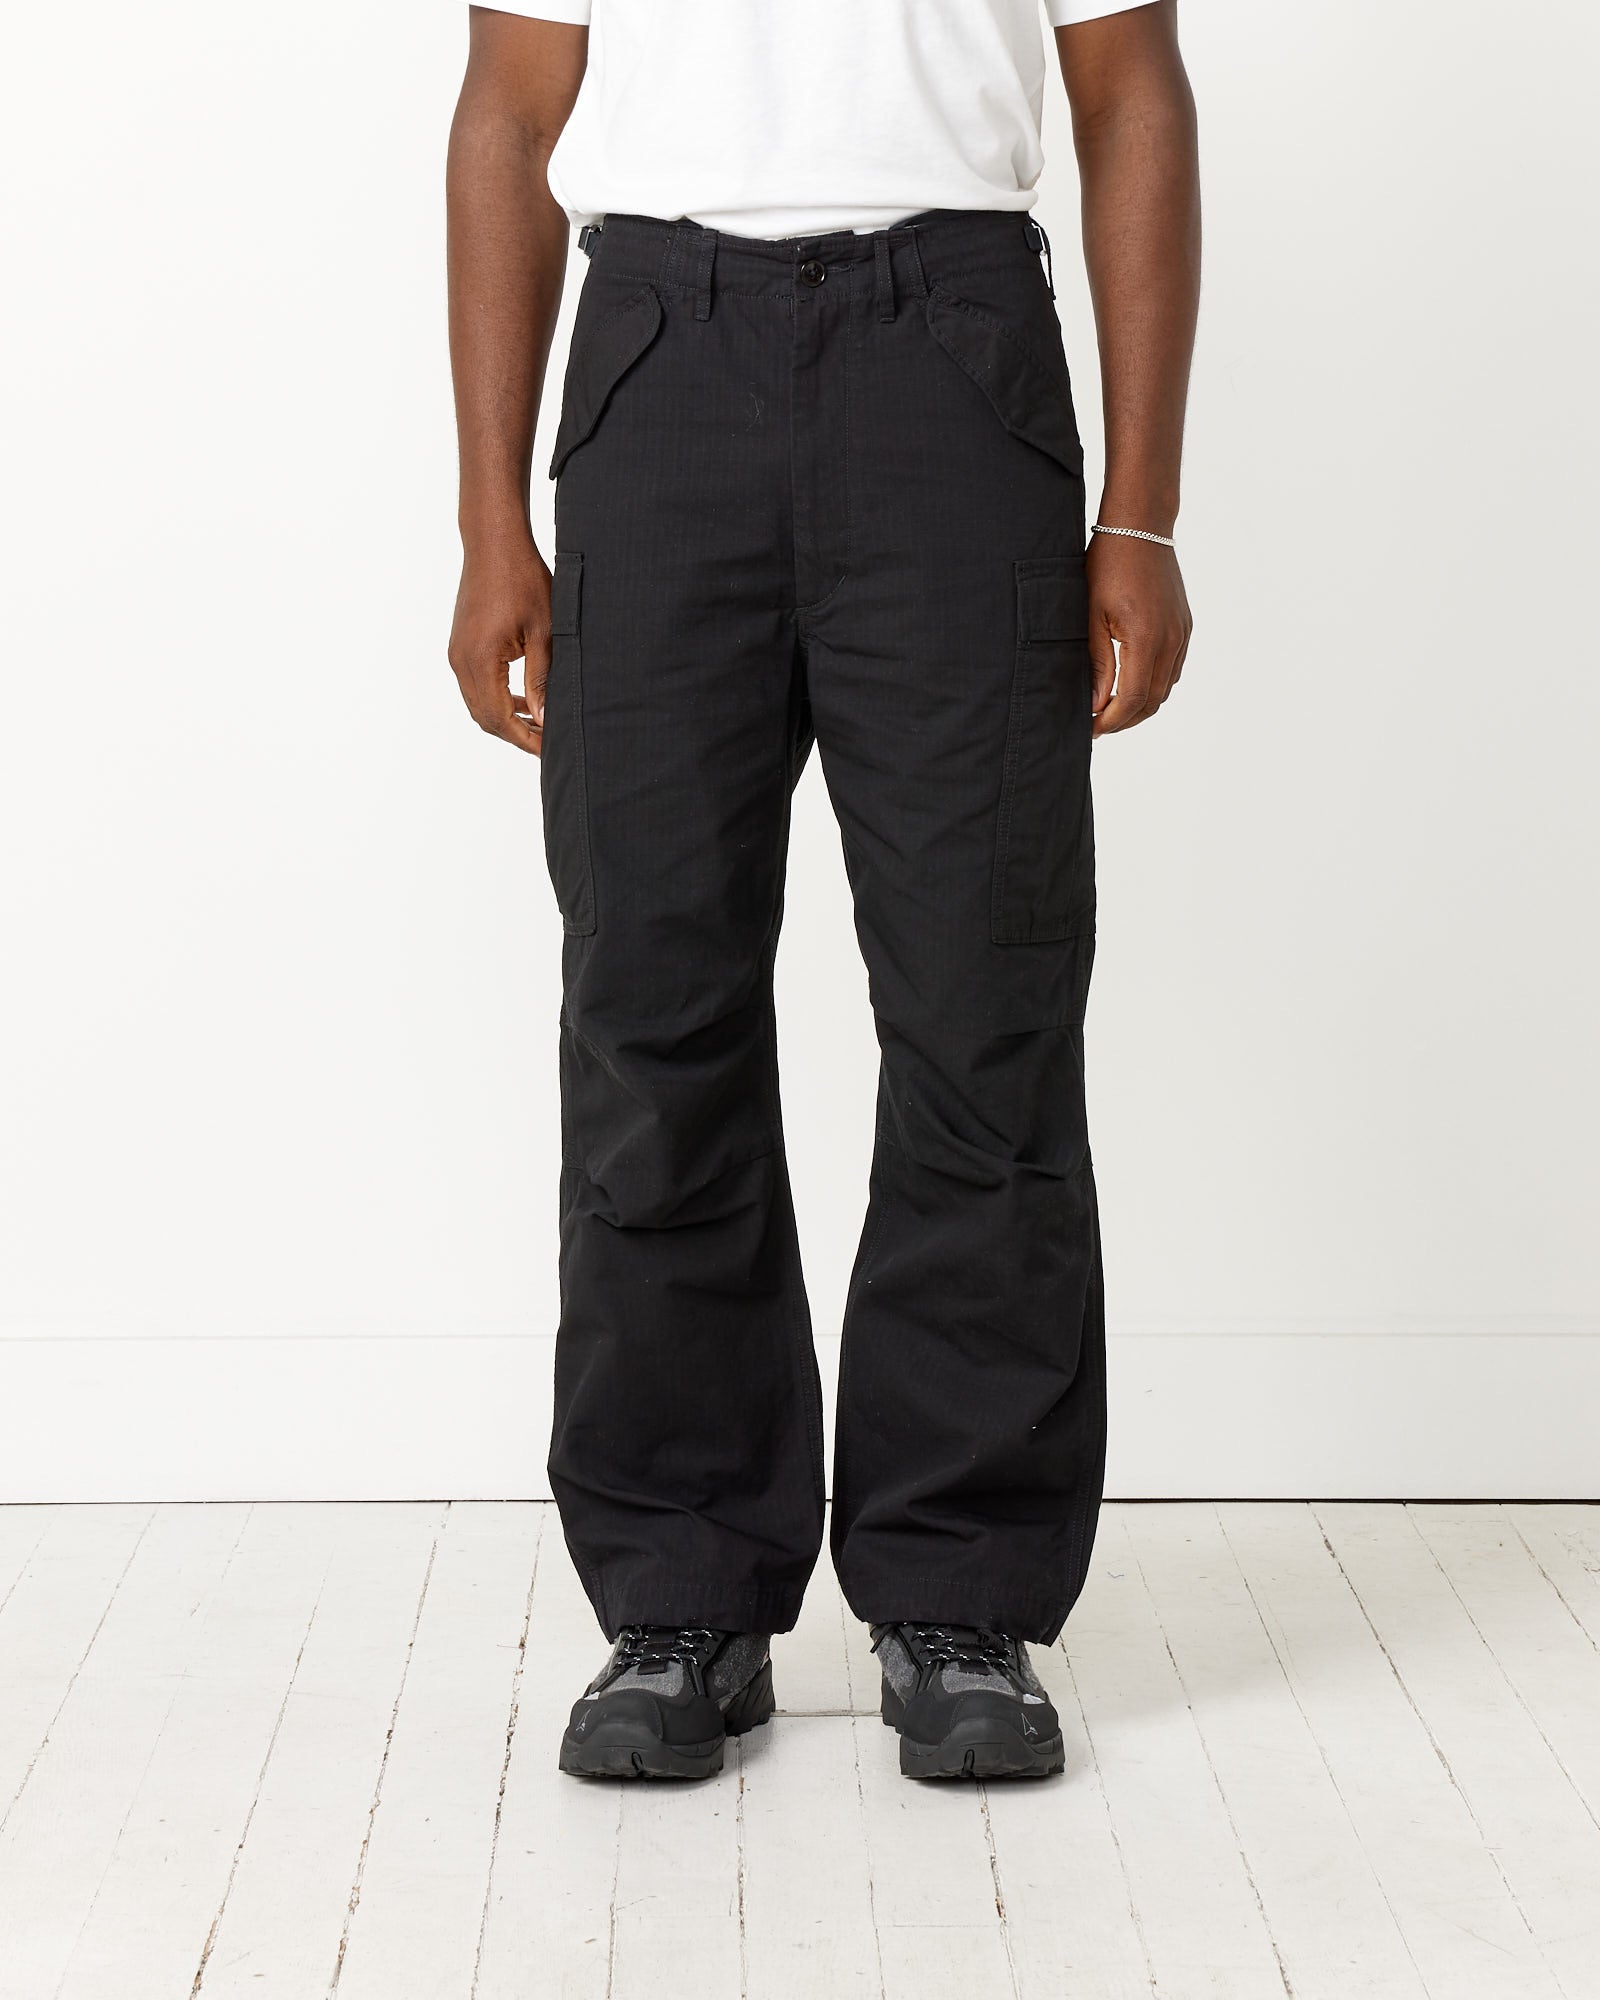 Black Drawstring Sweatpants by nanamica on Sale